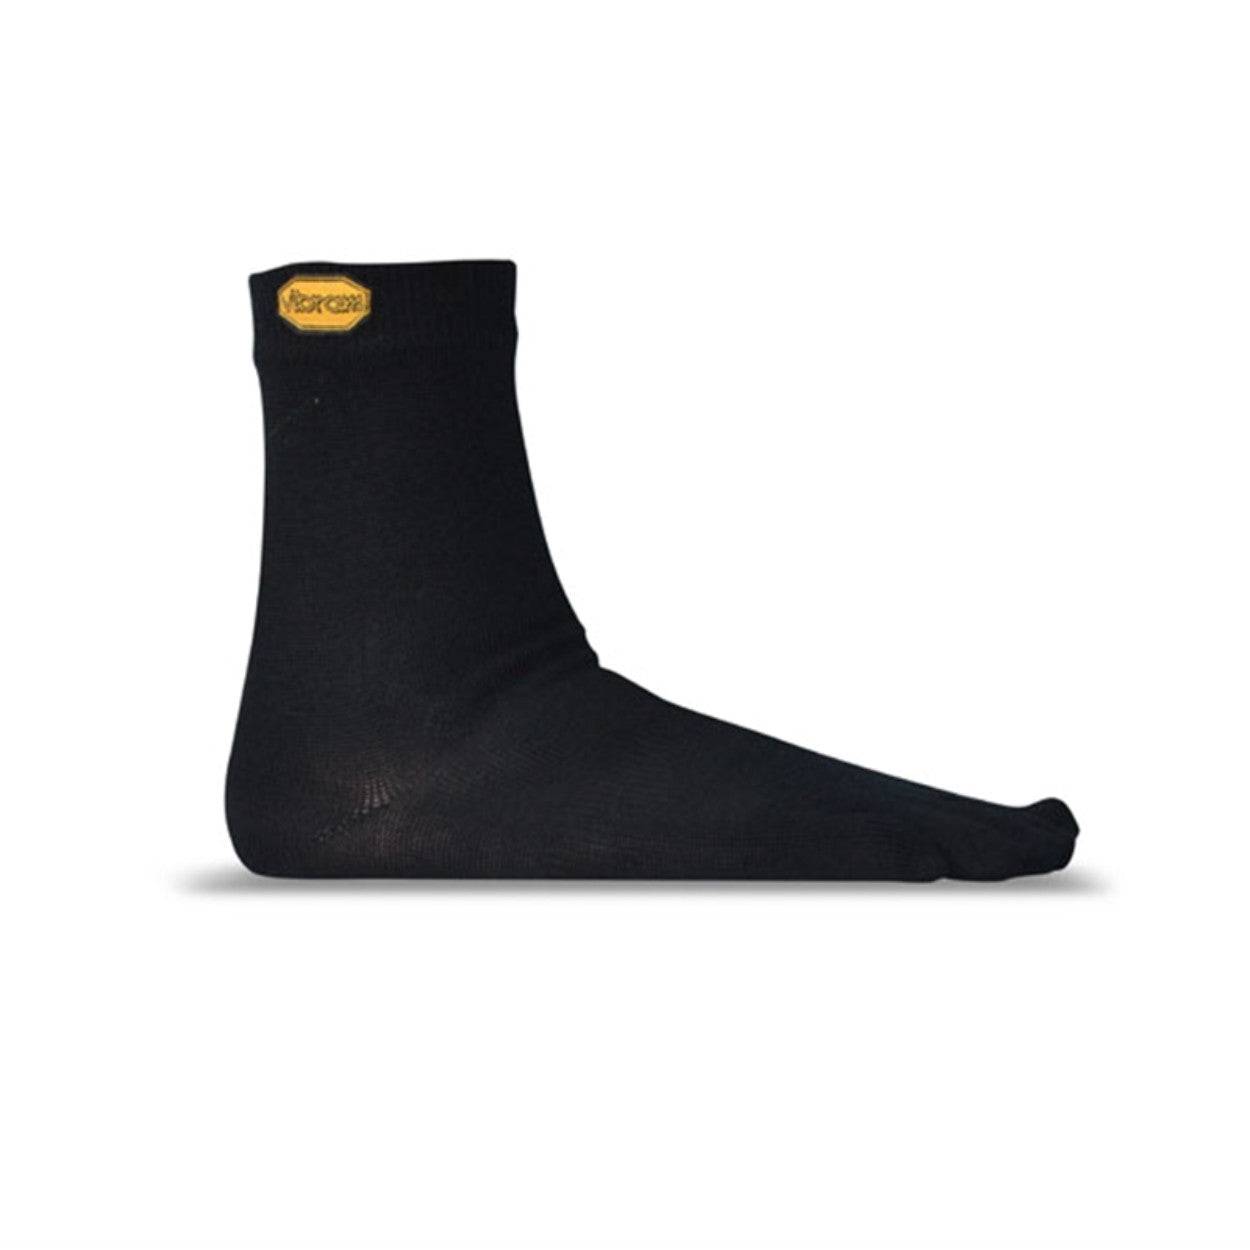 Vibram Toe Socks - Vibram Merino Wool-Blend Crew Toe Socks Black - Barefoot Junkie - Socks